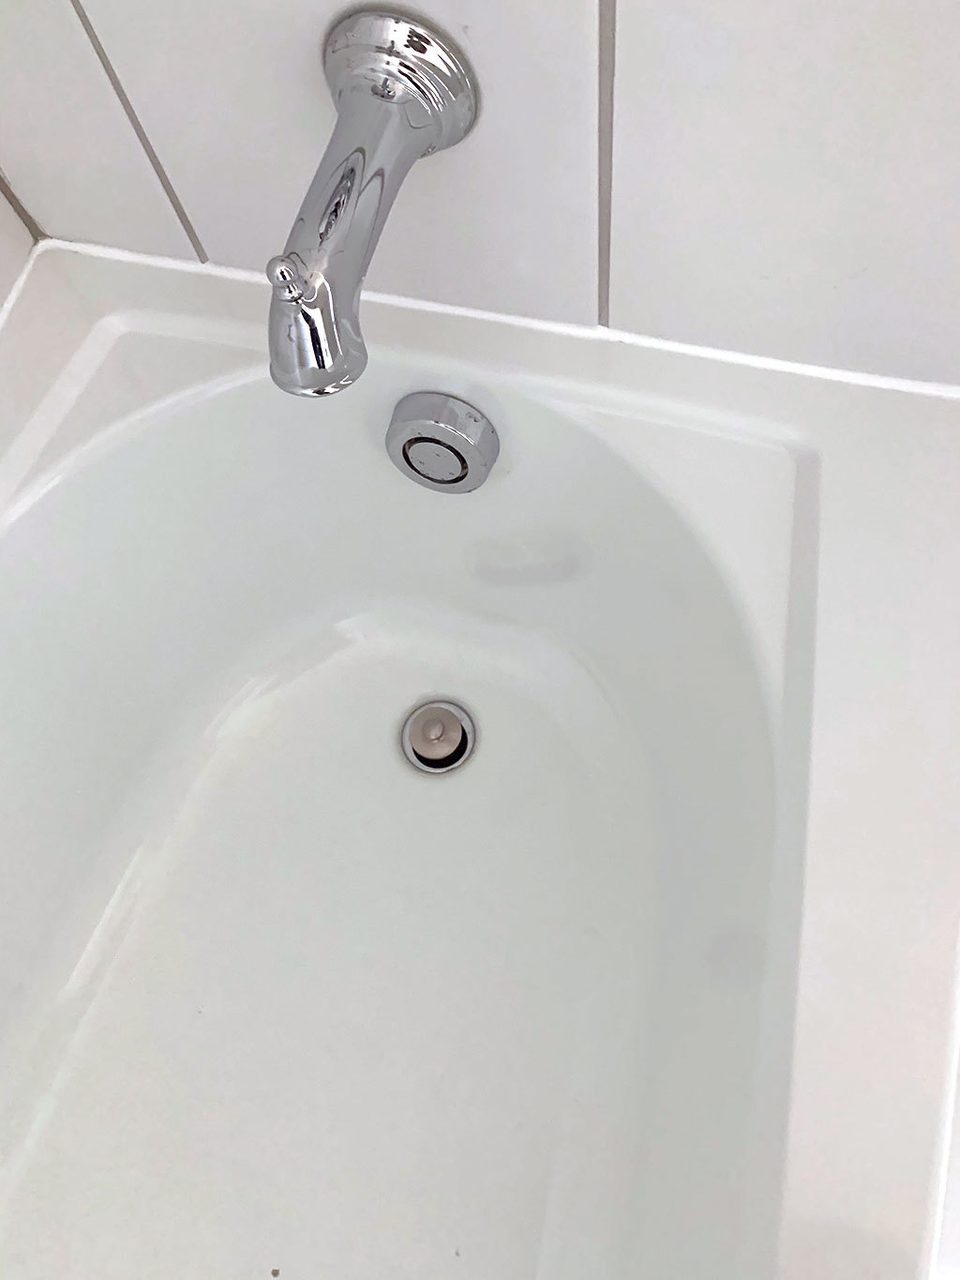 Plumbing fixture, Bathroom sink, Composite material, Brown, Tap, White, Fluid, Grey